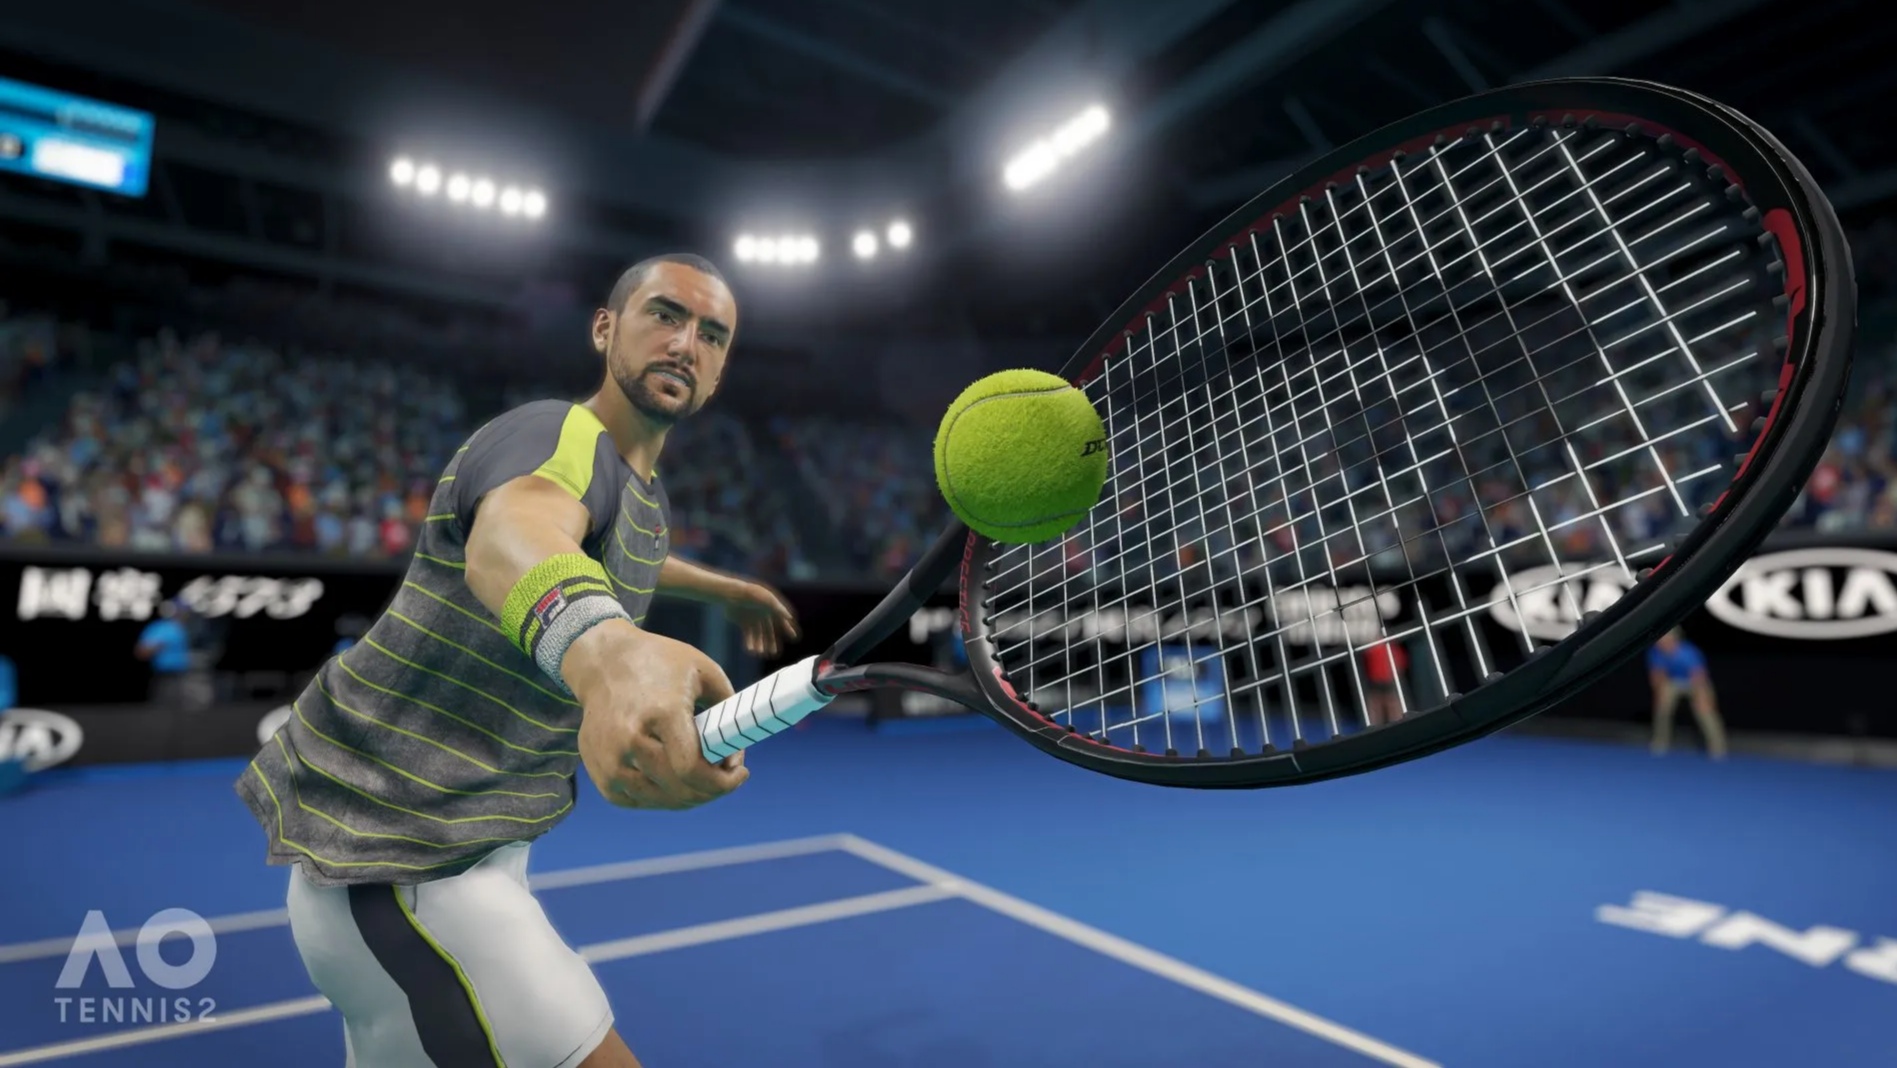 Oznámena sportovní hra AO Tennis 2